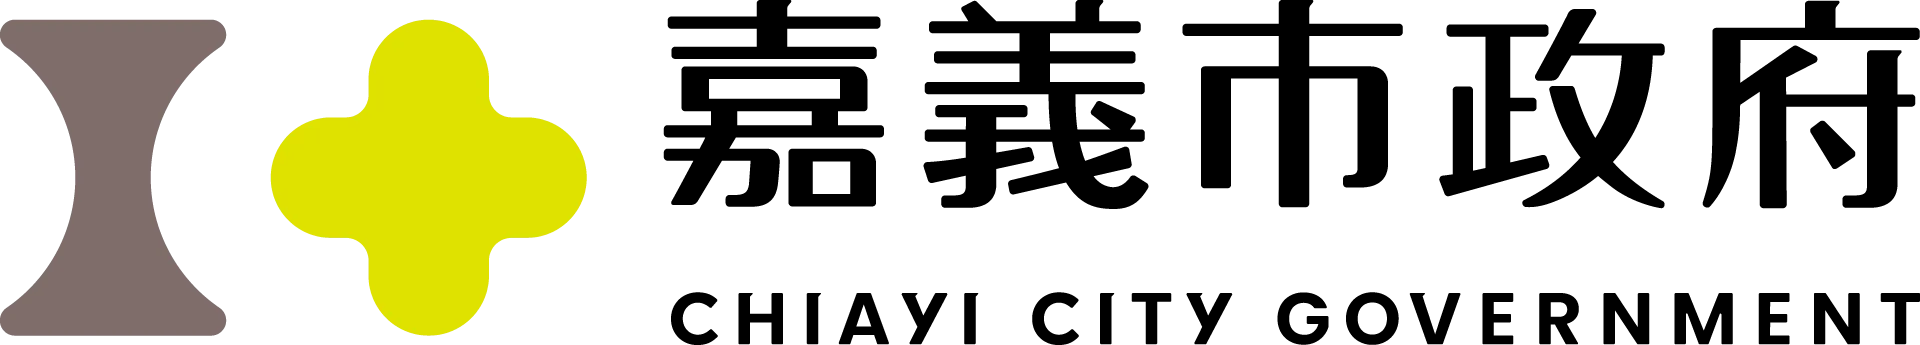 嘉義市logo